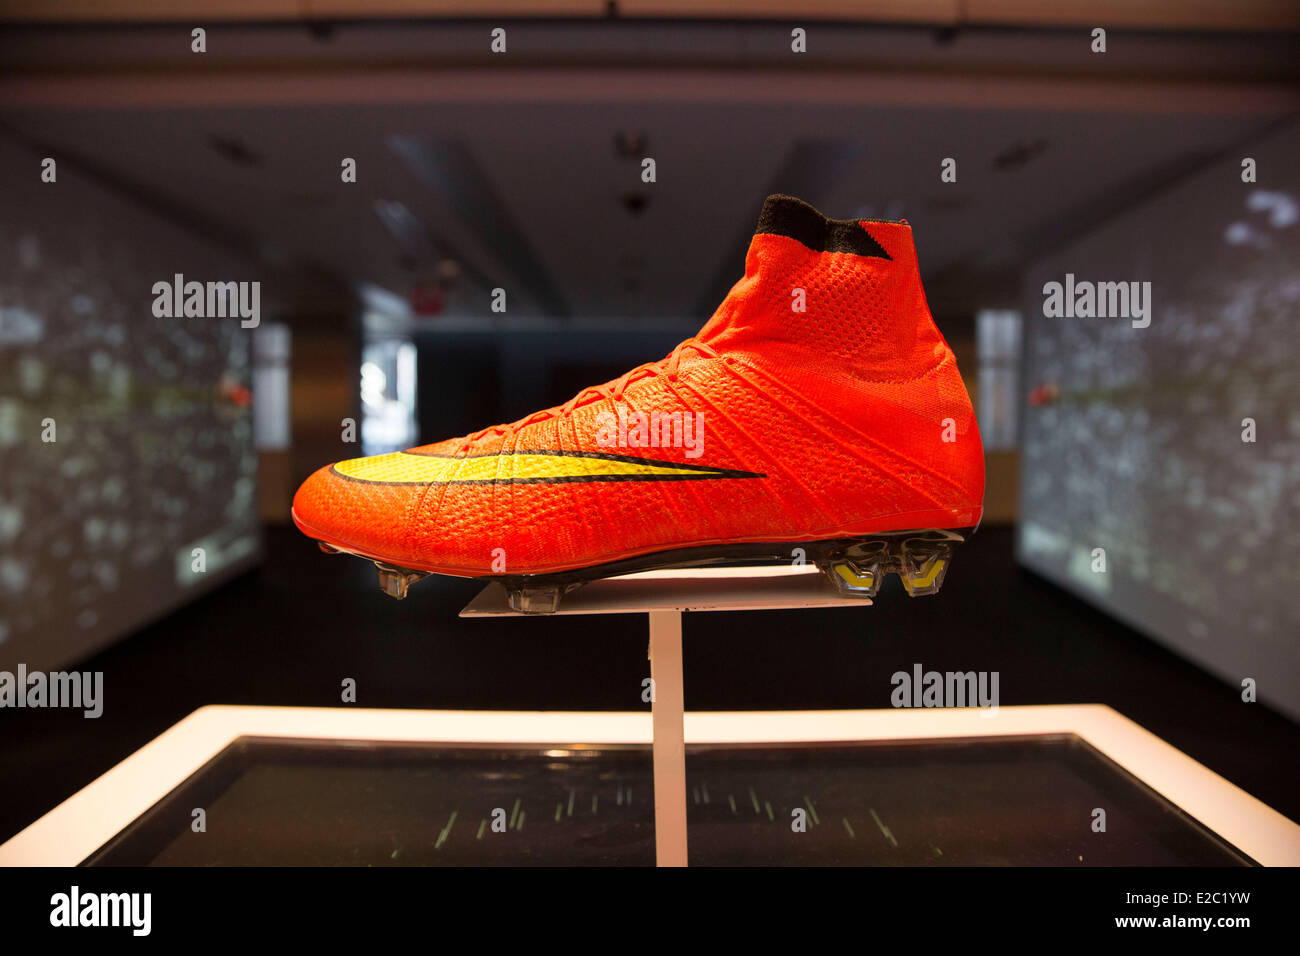 Cristiano Ronaldo Boots Immagini e Fotos Stock - Alamy